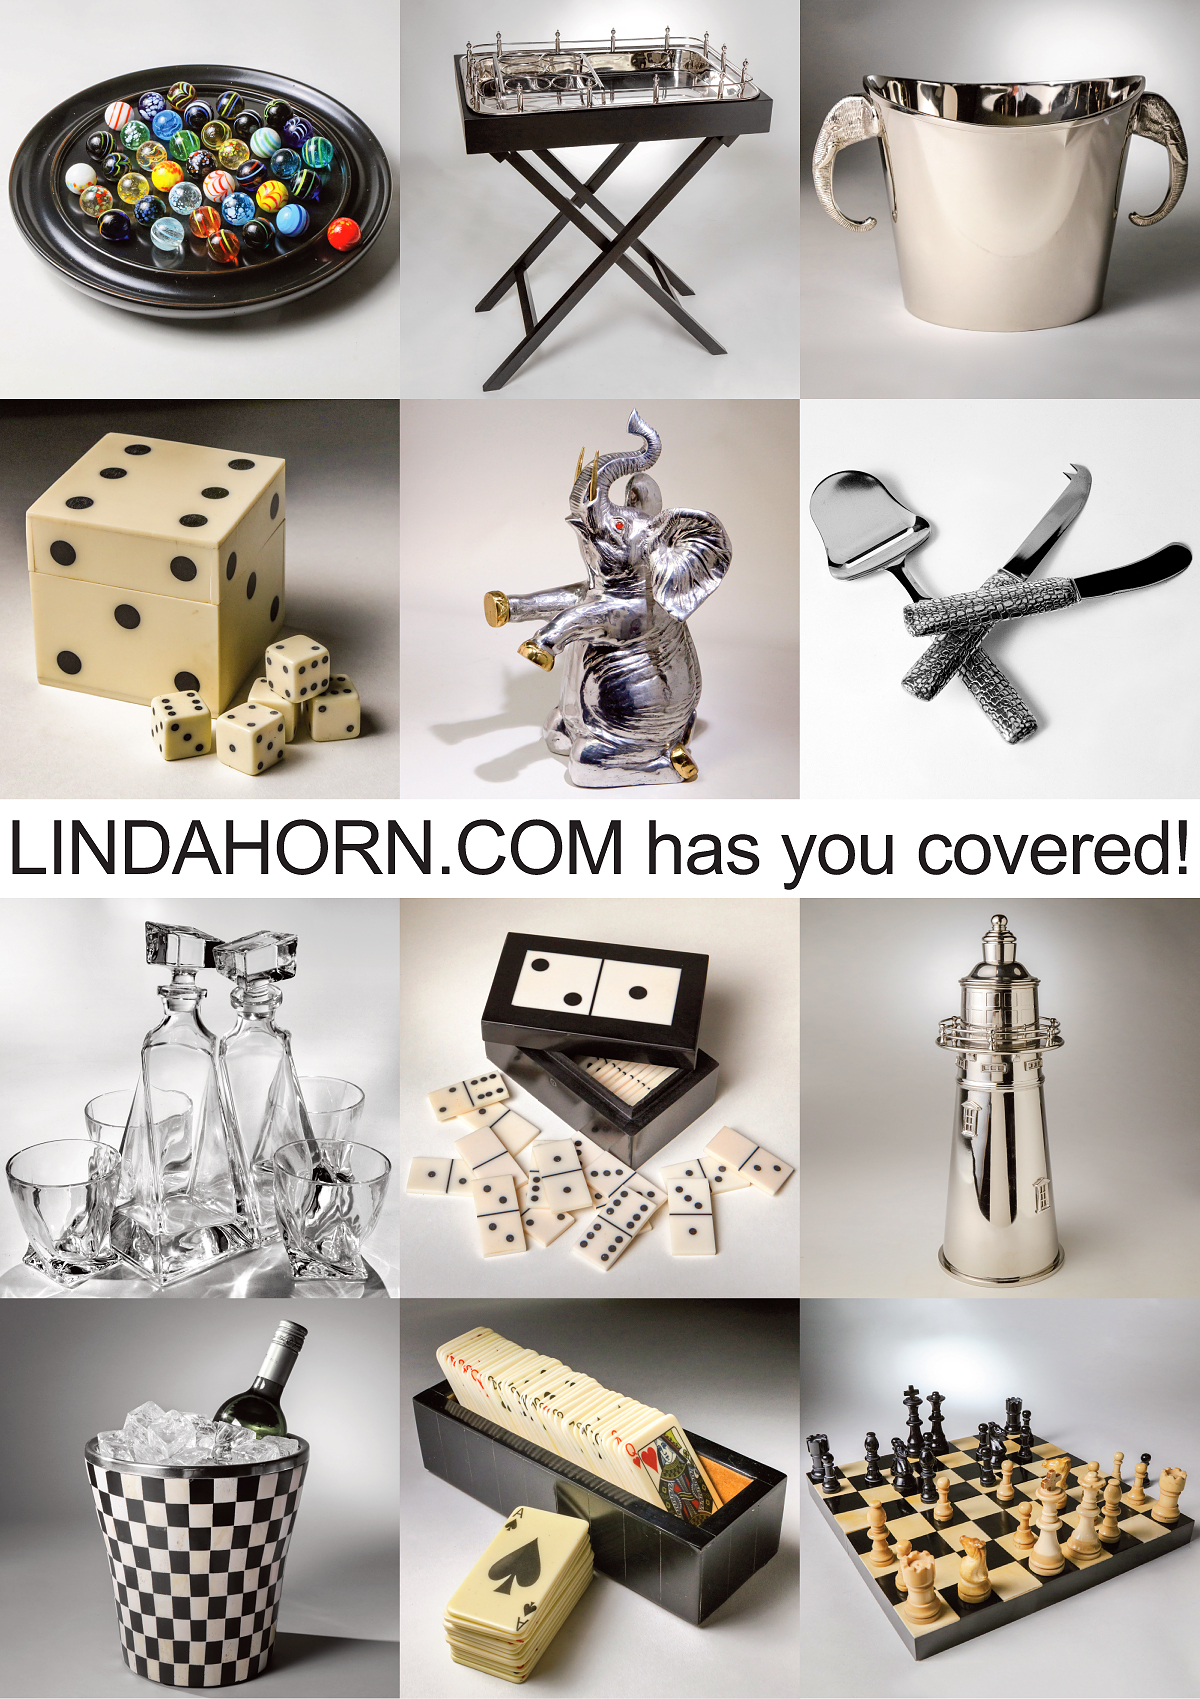 LINDAHORN.COM Has You Covered